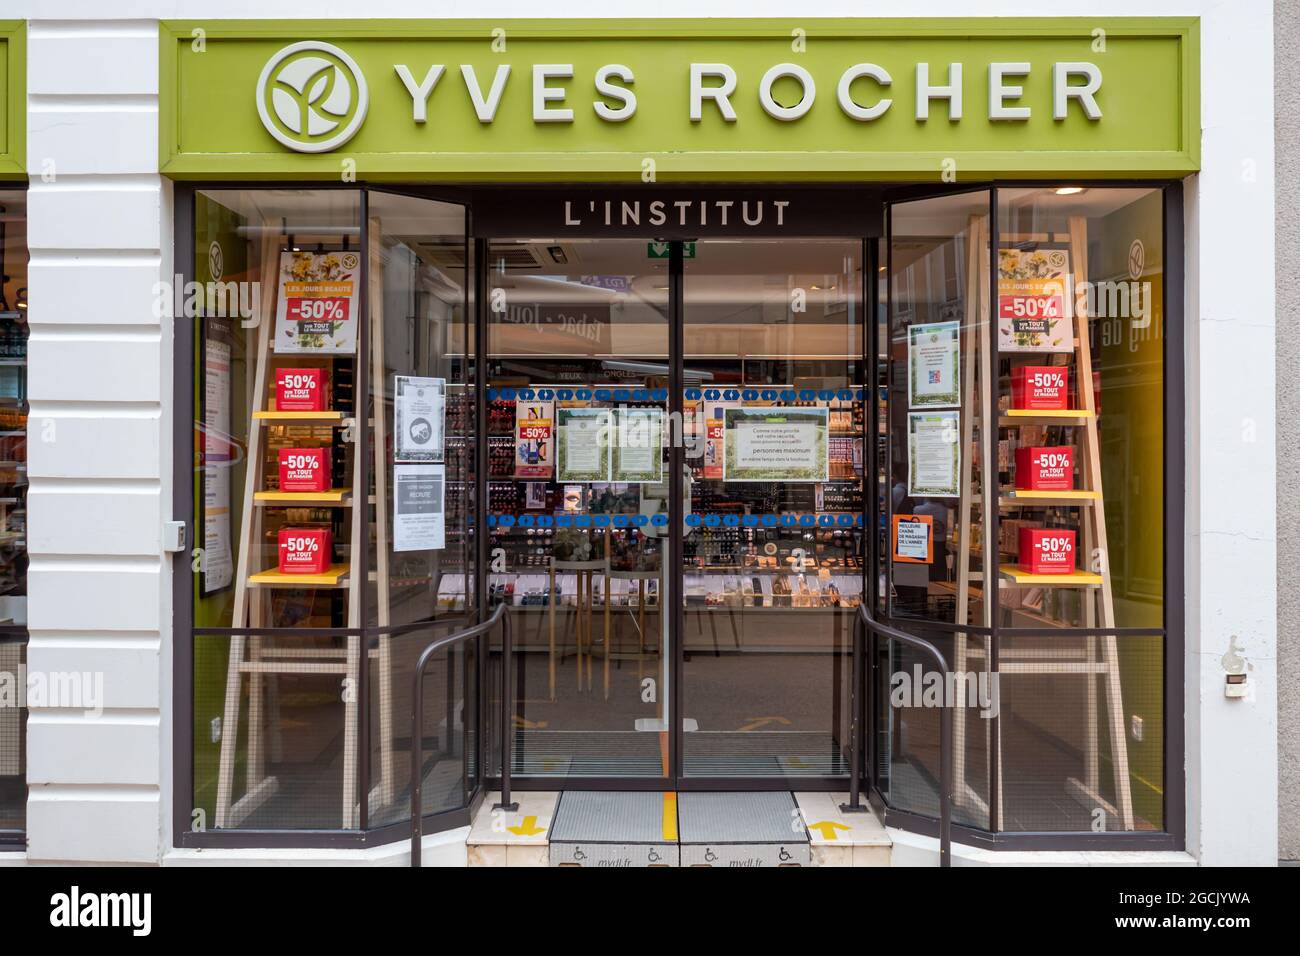 SABLE, FRANKREICH - 22. Jul 2021: Ein Blick auf die Marke Yves Rocher Store Fronts von in Sable, Frankreich für Hautpflegeprodukte Stockfoto